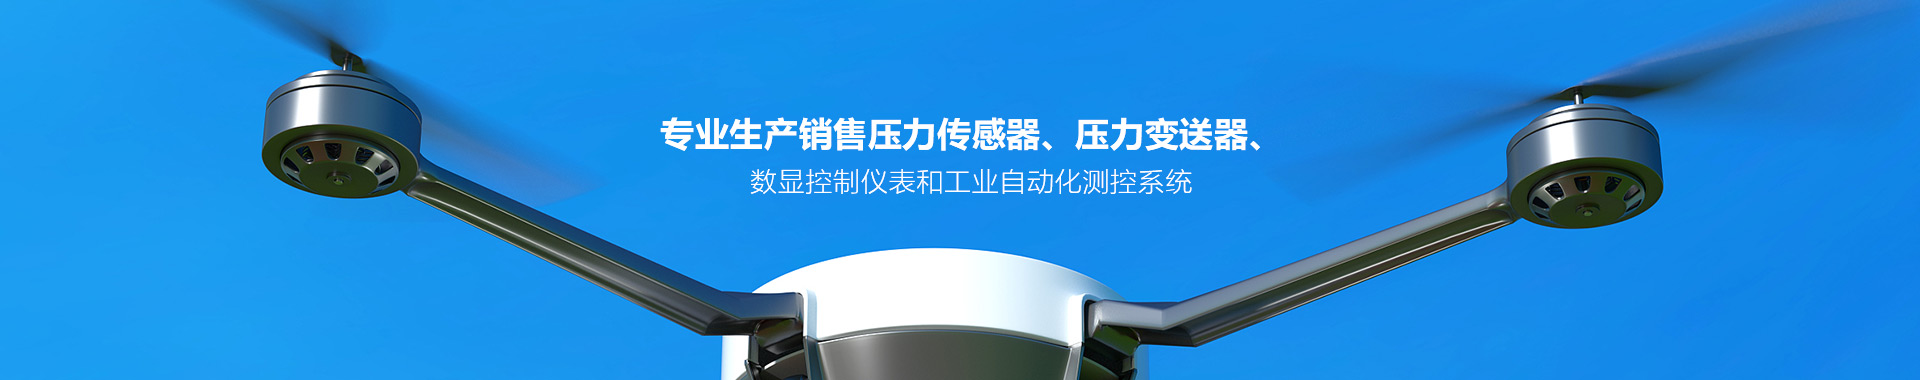 长沙火狐app全站
电子设备有限公司